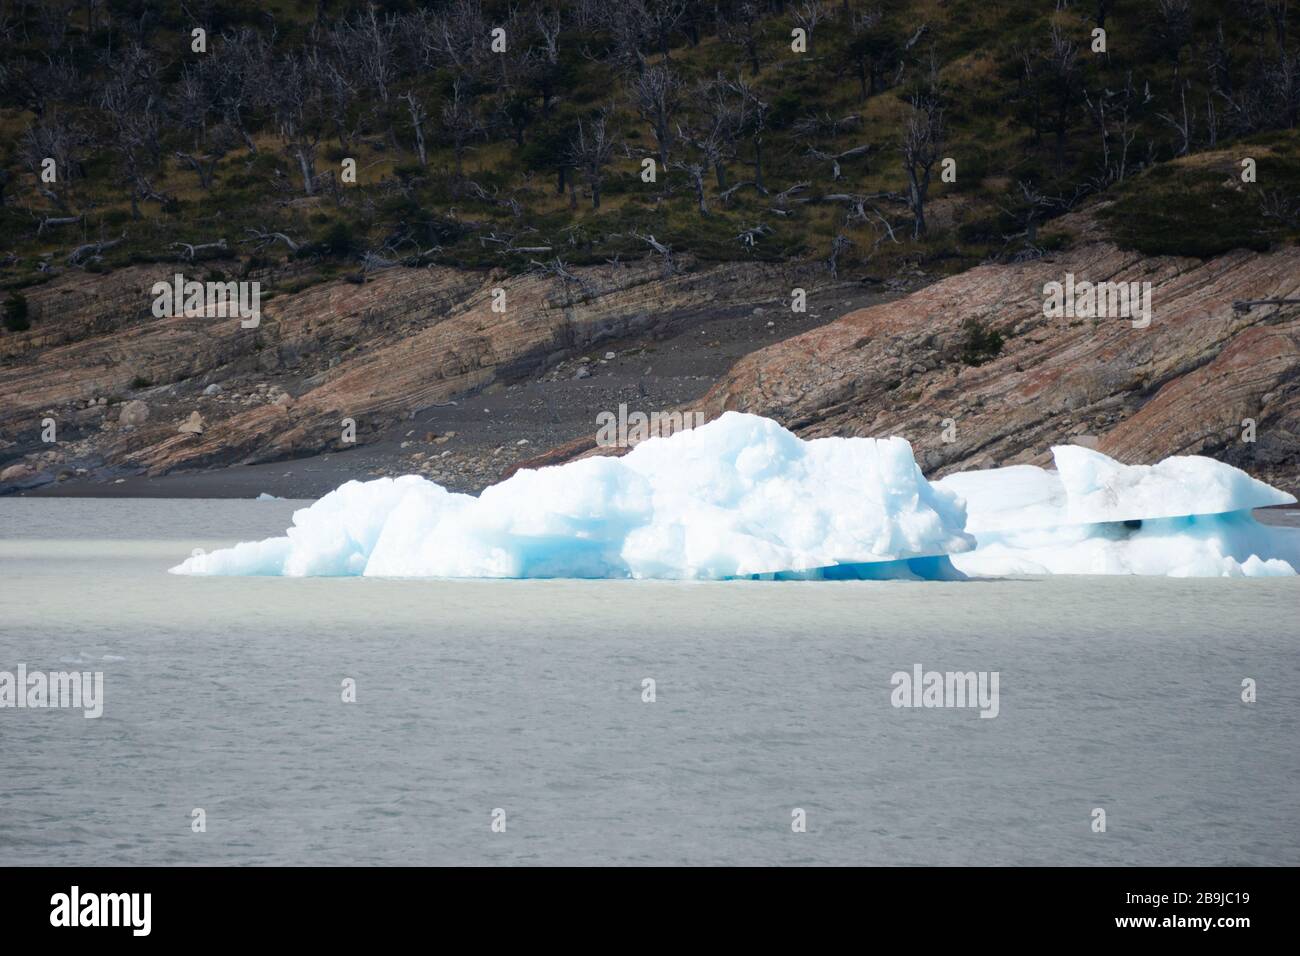 Perito Moreno glacier in Patagonia, Argentina Stock Photo